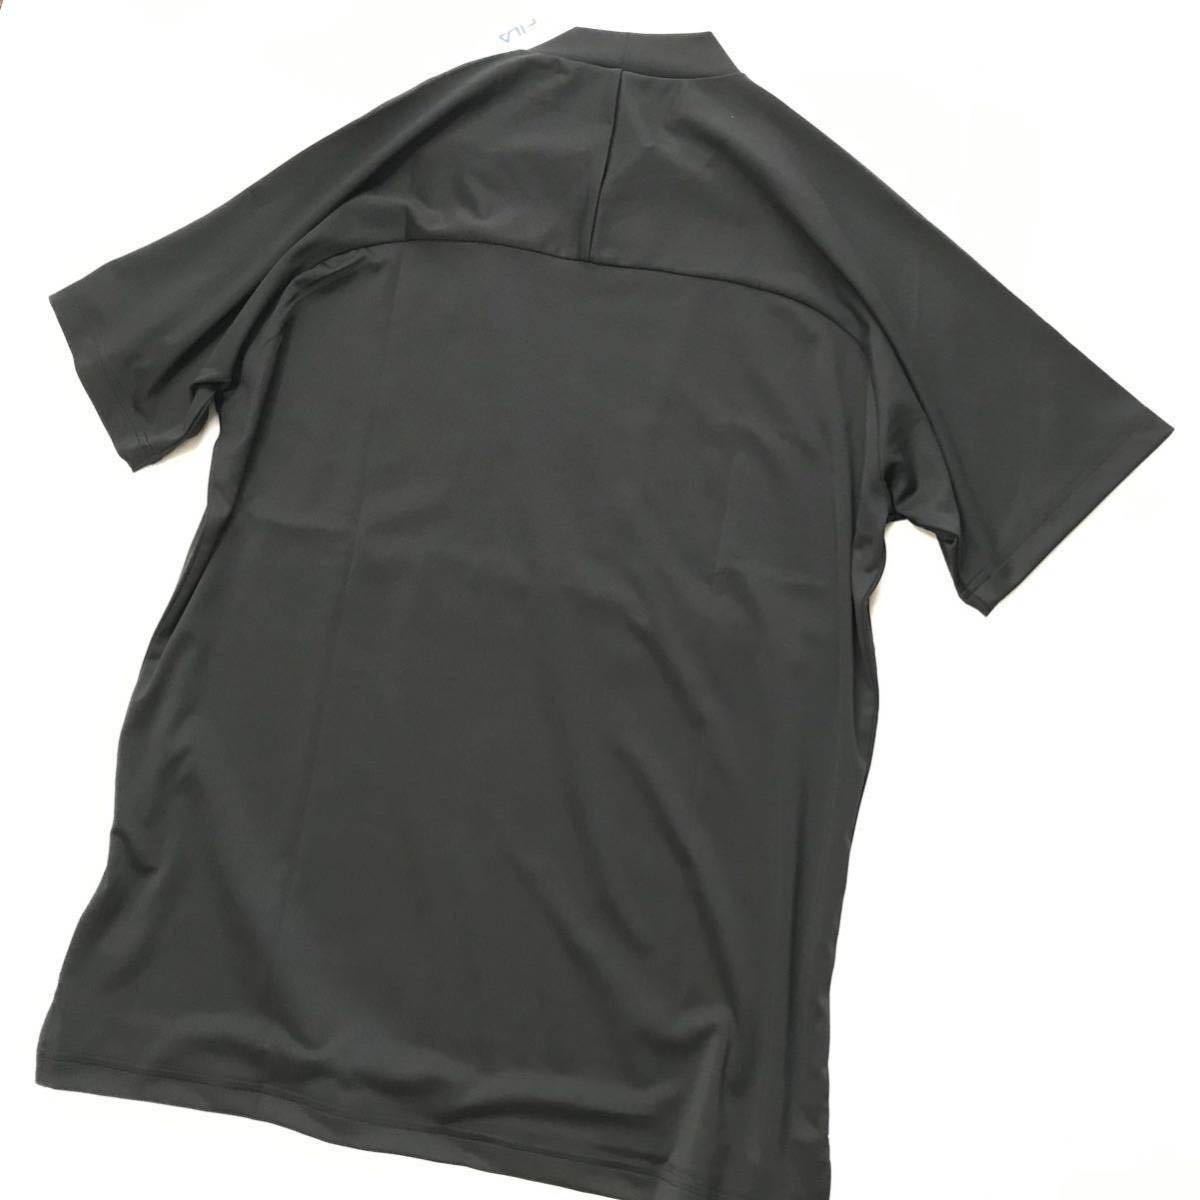 *095 новый товар [ мужской XL(LL)] чёрный черный FILA GOLF filler Golf sm- рубашка шея рубашка . пот скорость . одежда для гольфа контакт охлаждающий UV cut 